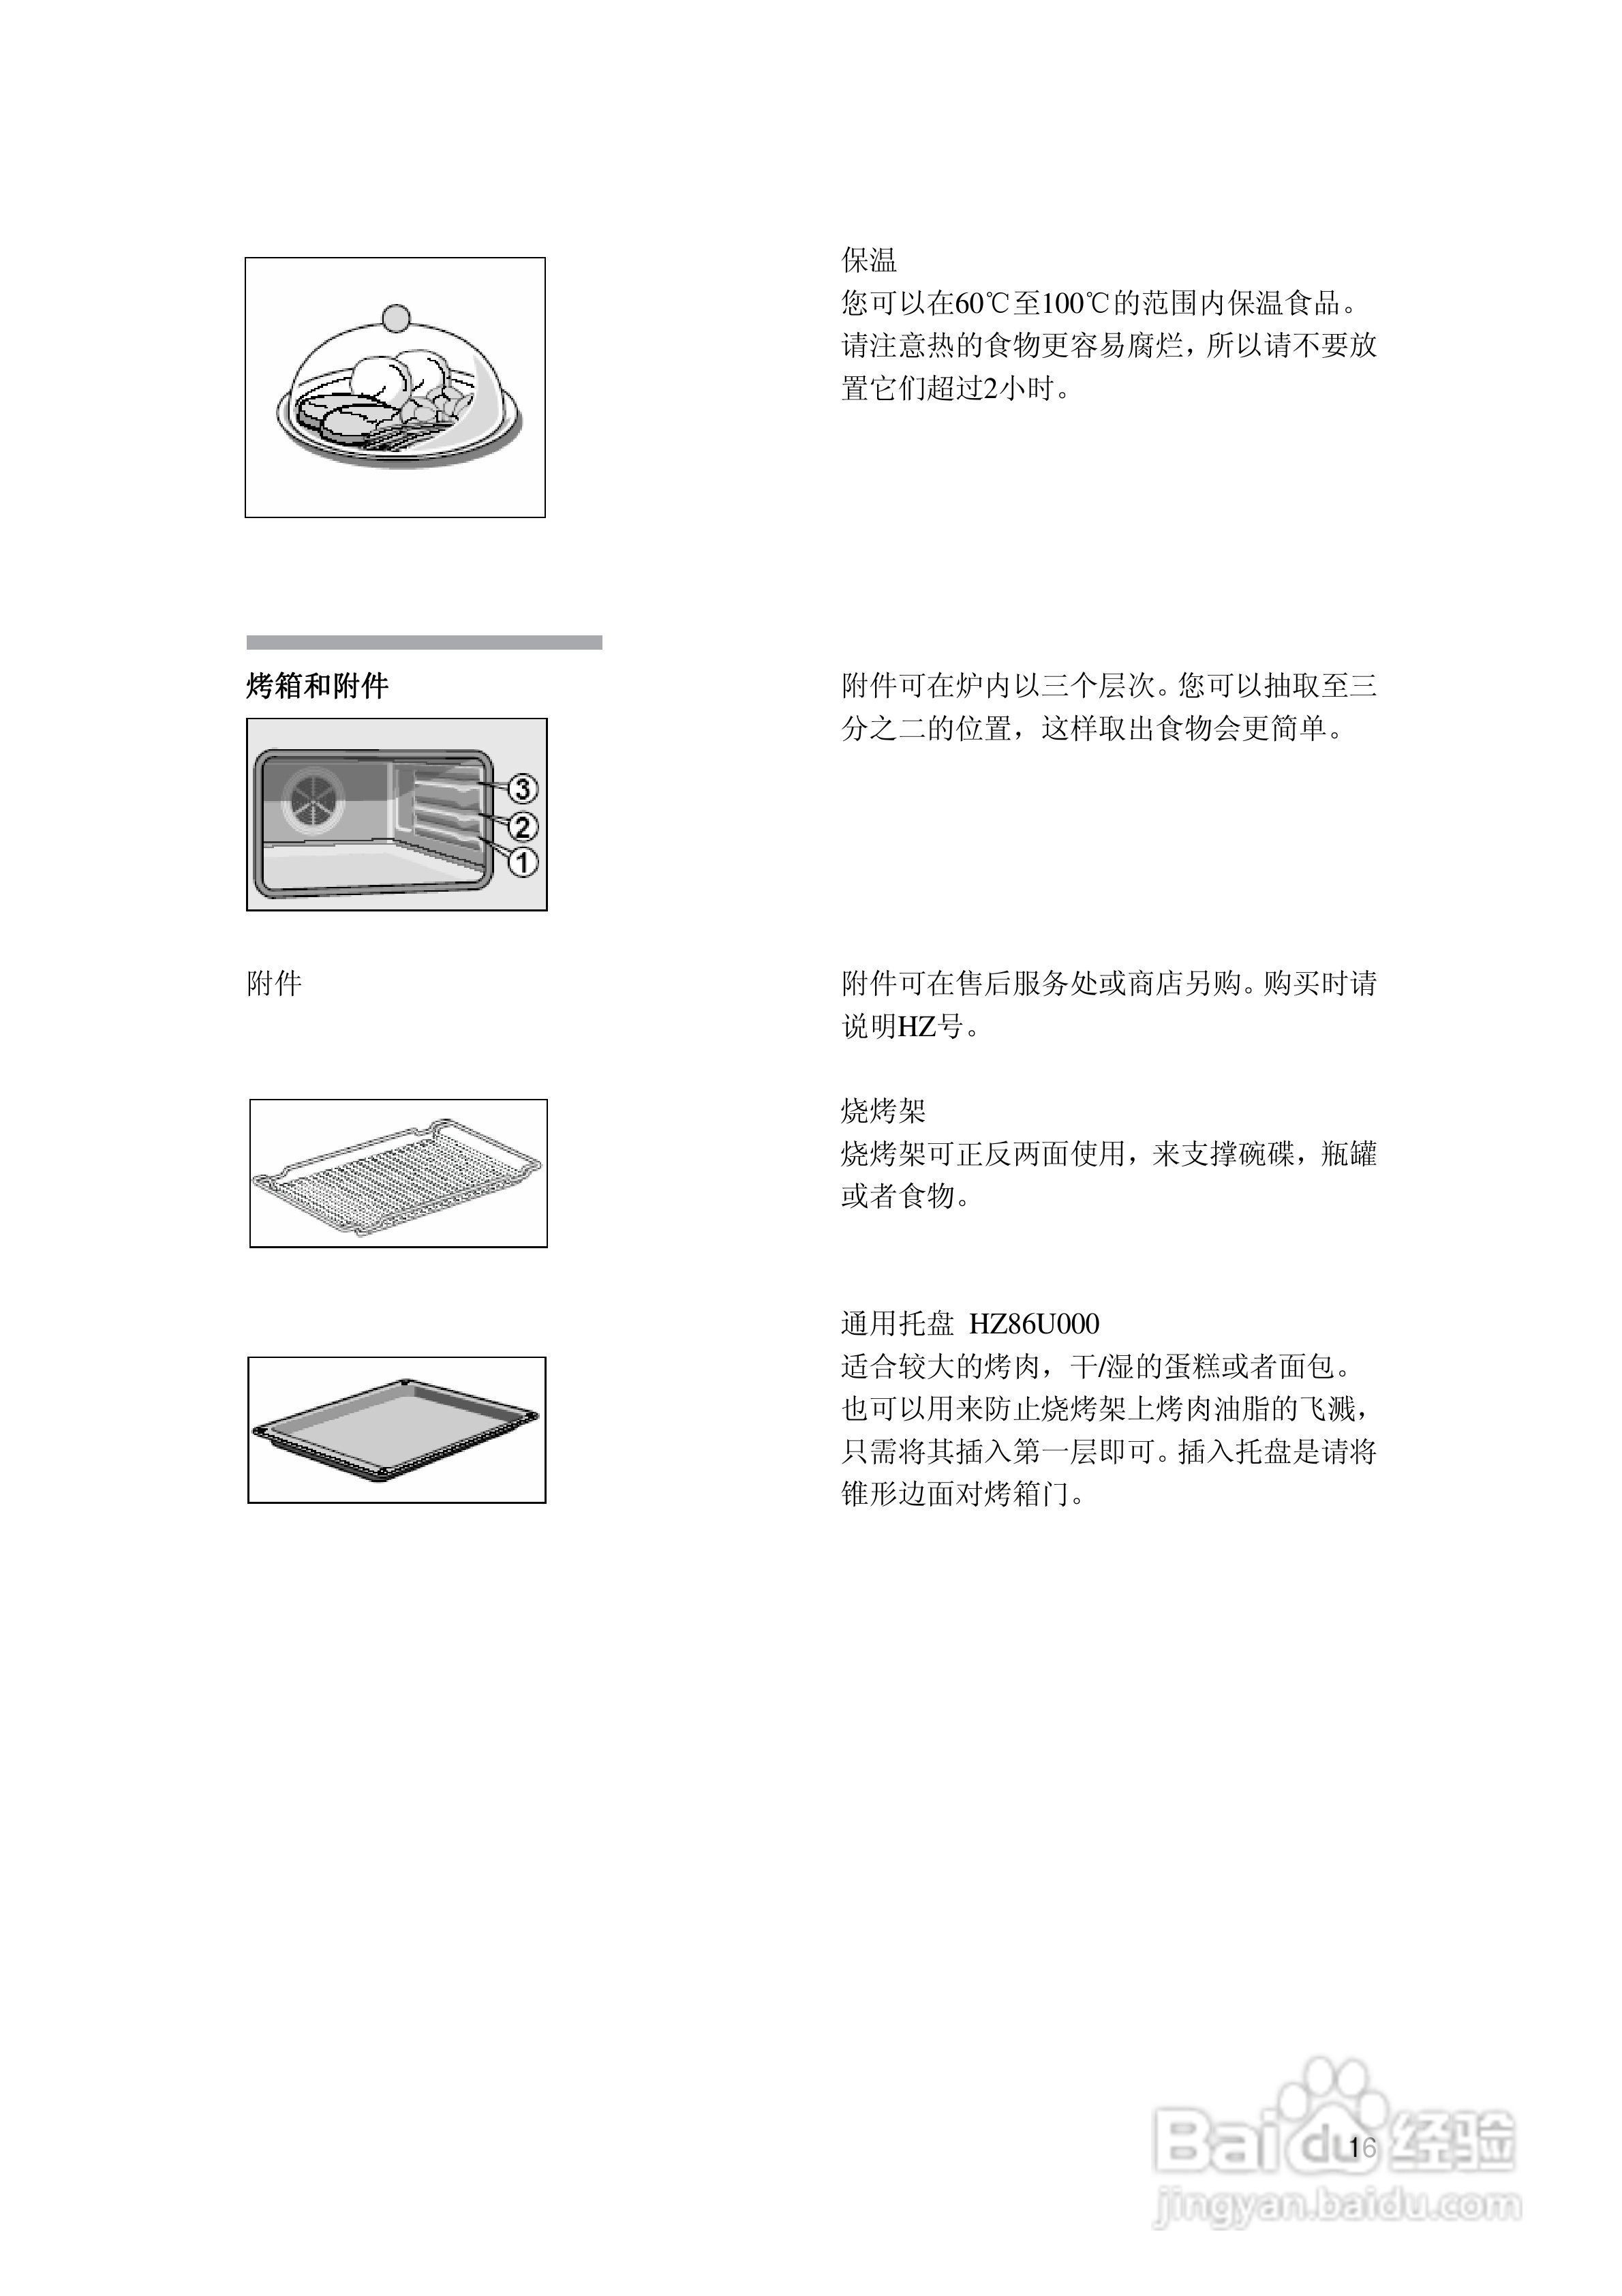 西门子hb86k581b烤箱使用说明书:[2]